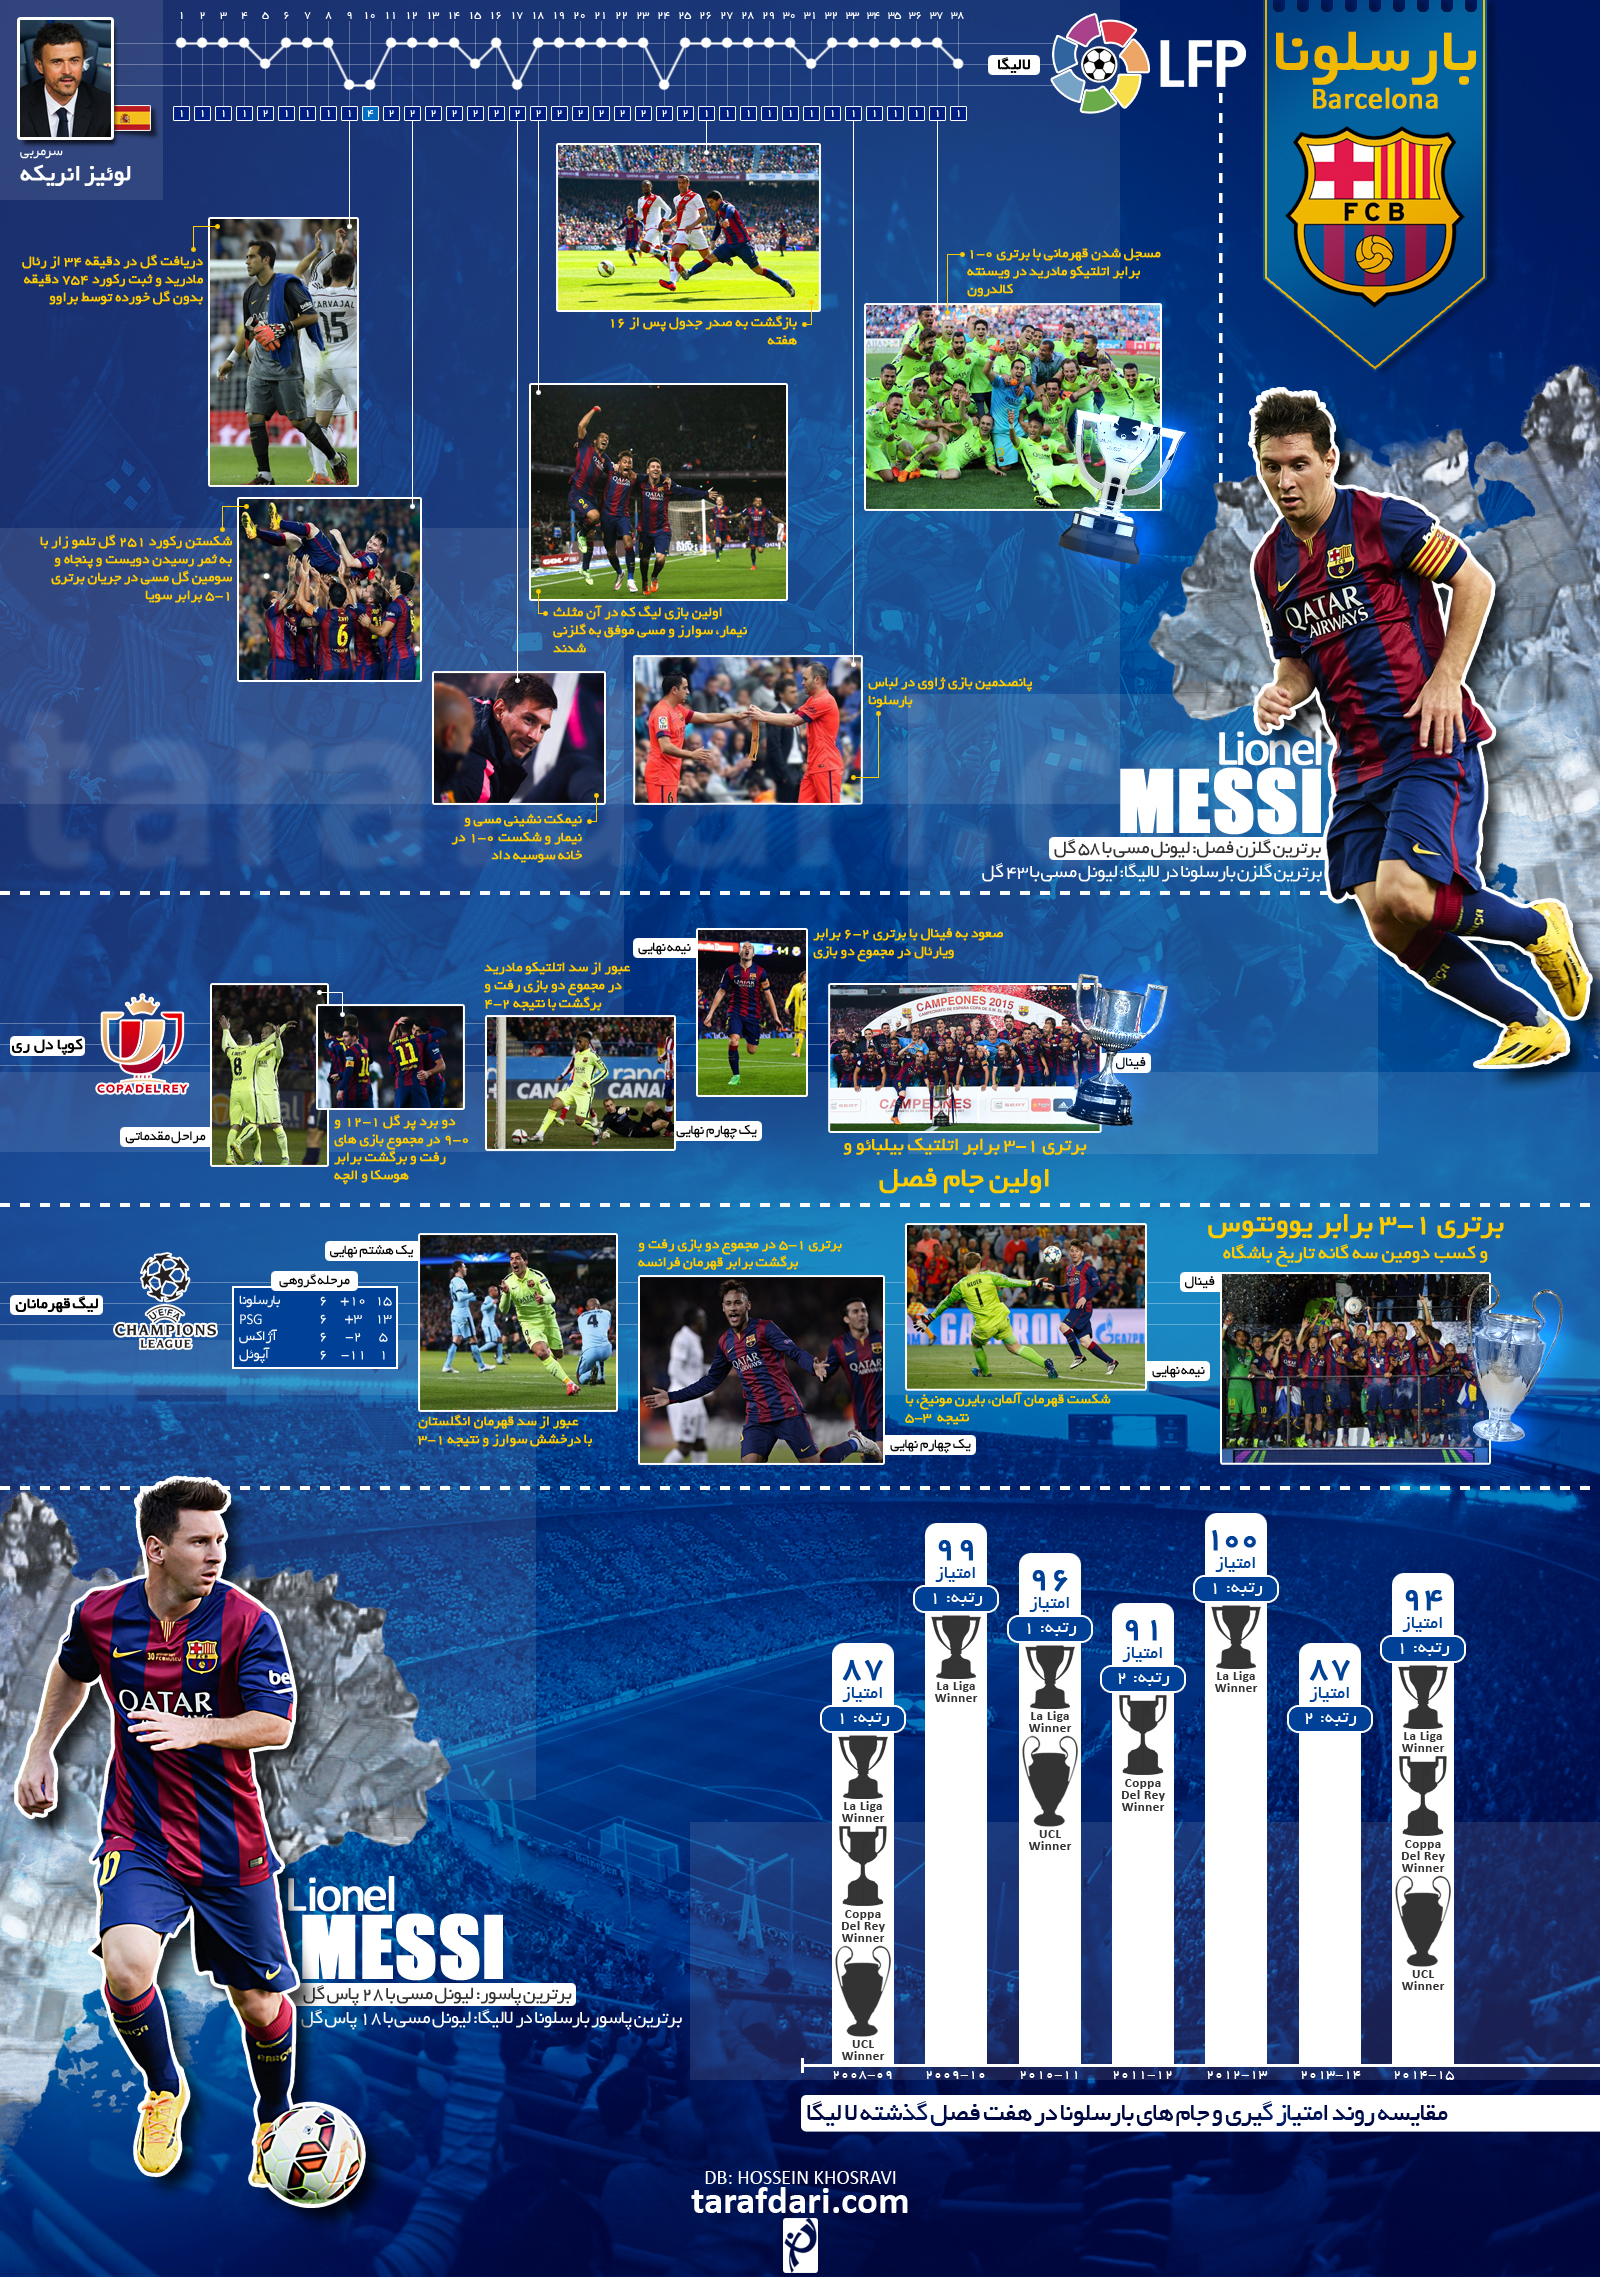 اینفوگرافیک اختصاصی طرفداری؛ بررسی عملکرد تیم بارسلونا در فصل 15-2014